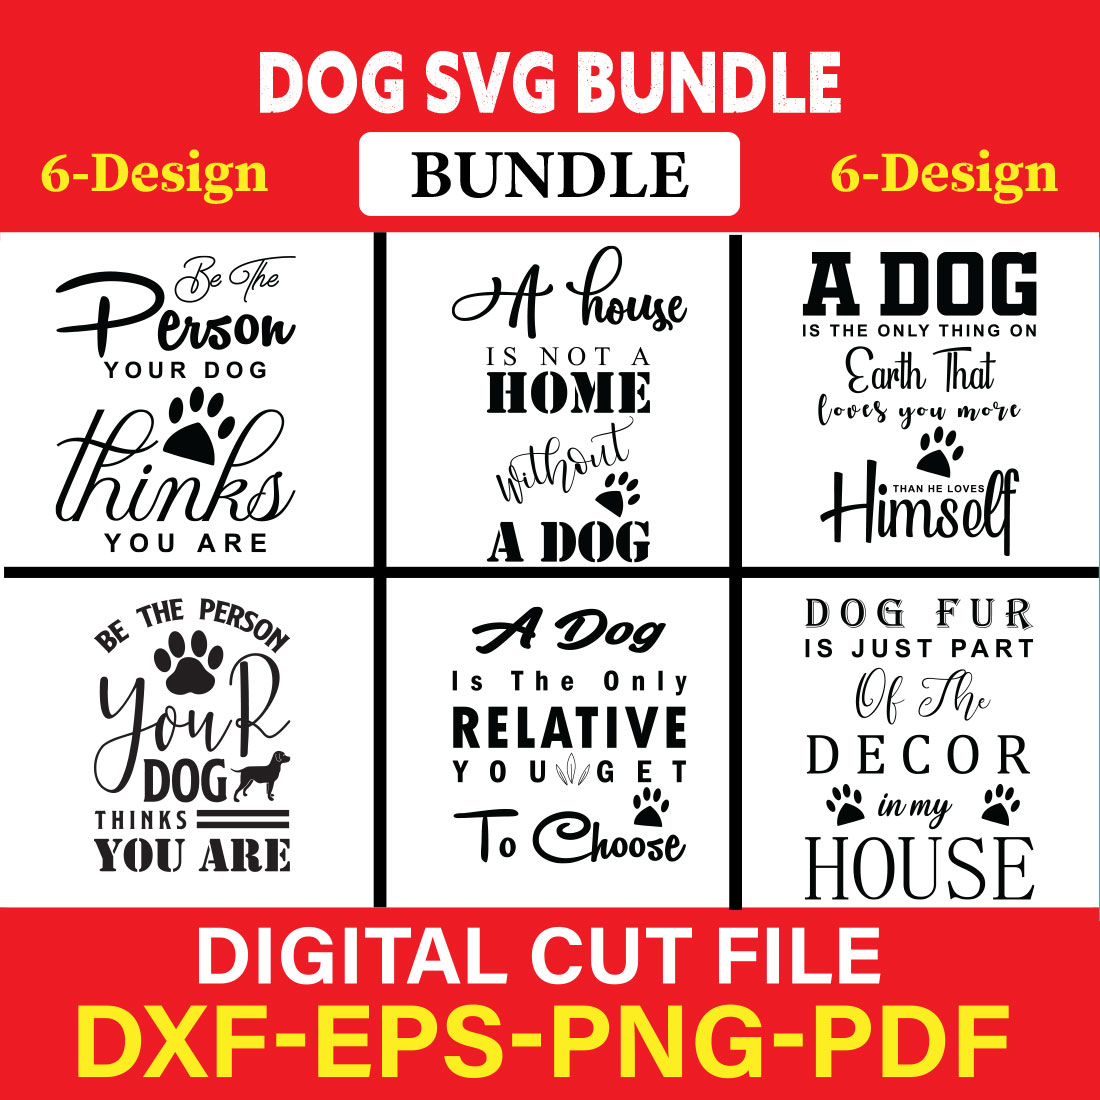 Dog T-shirt Design Bundle Vol-16 cover image.